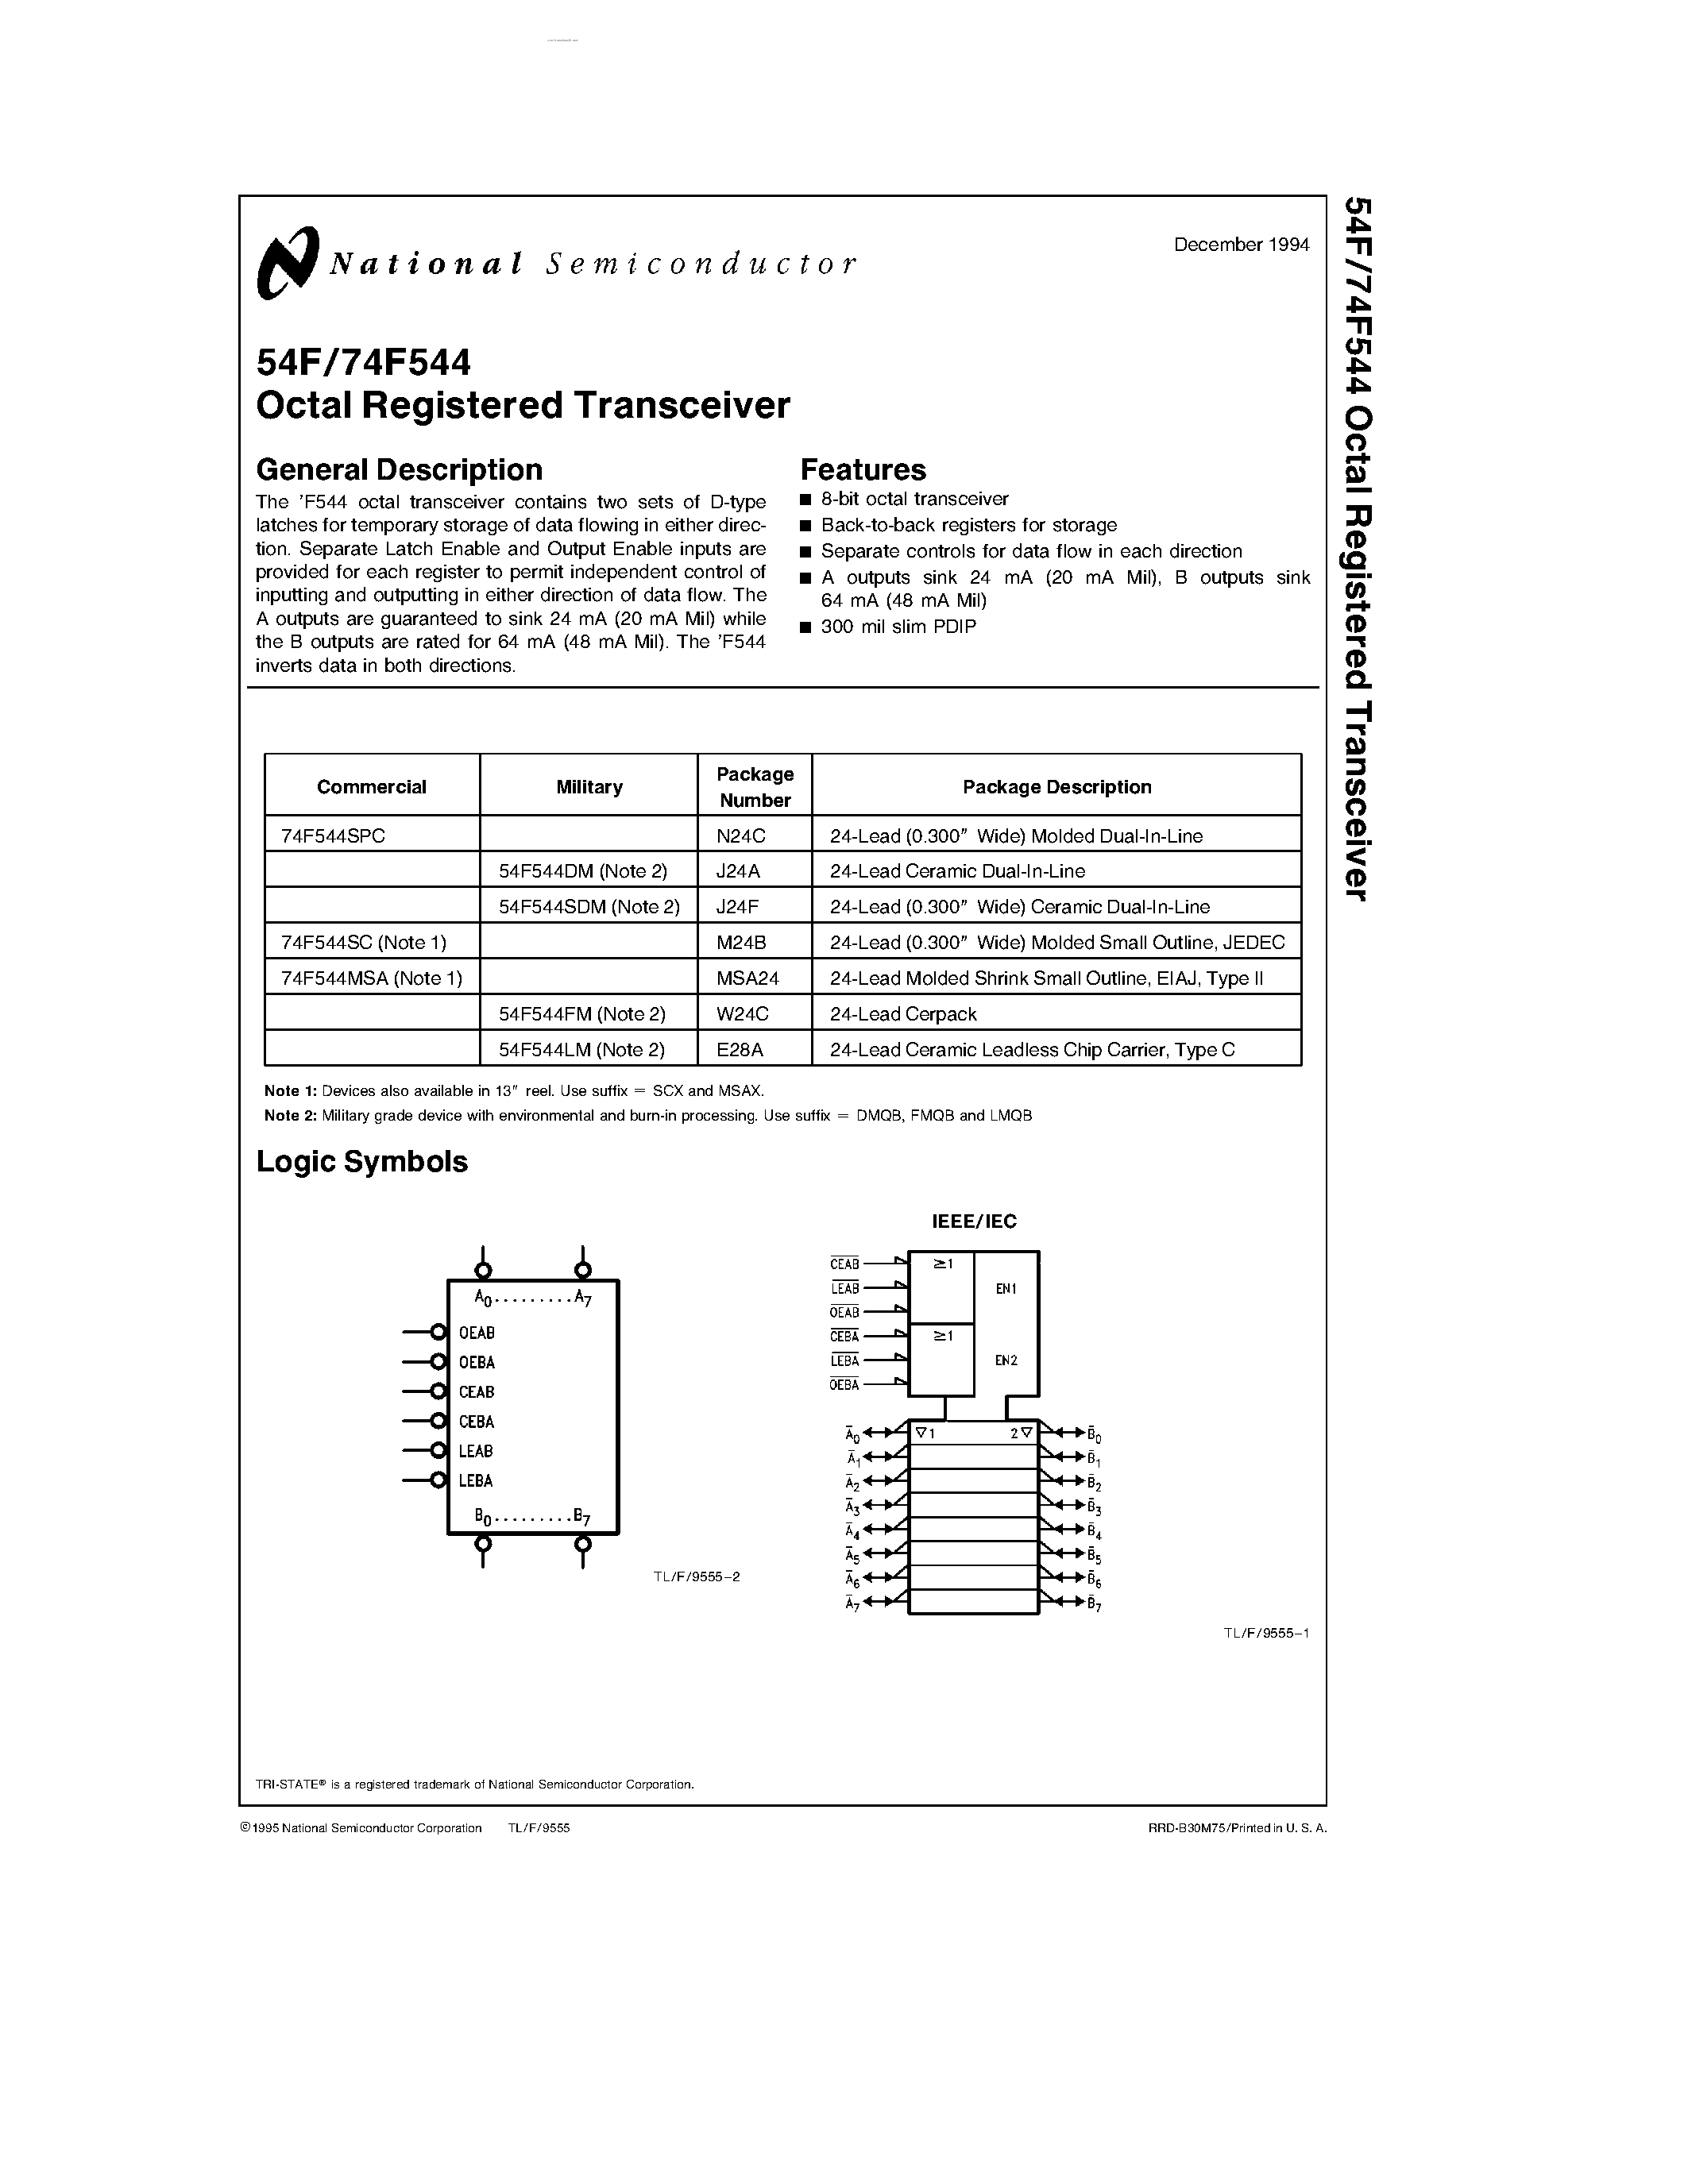 Даташит 54F544 - Octal Registered Transceiver страница 1